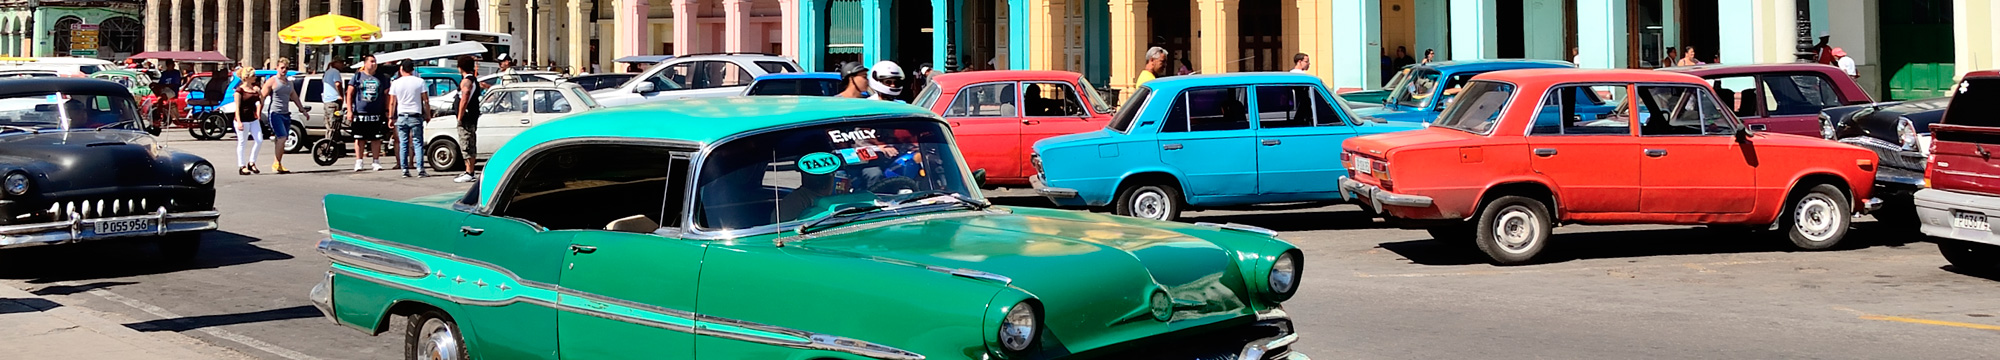 Cuba: La Havana i Varadero